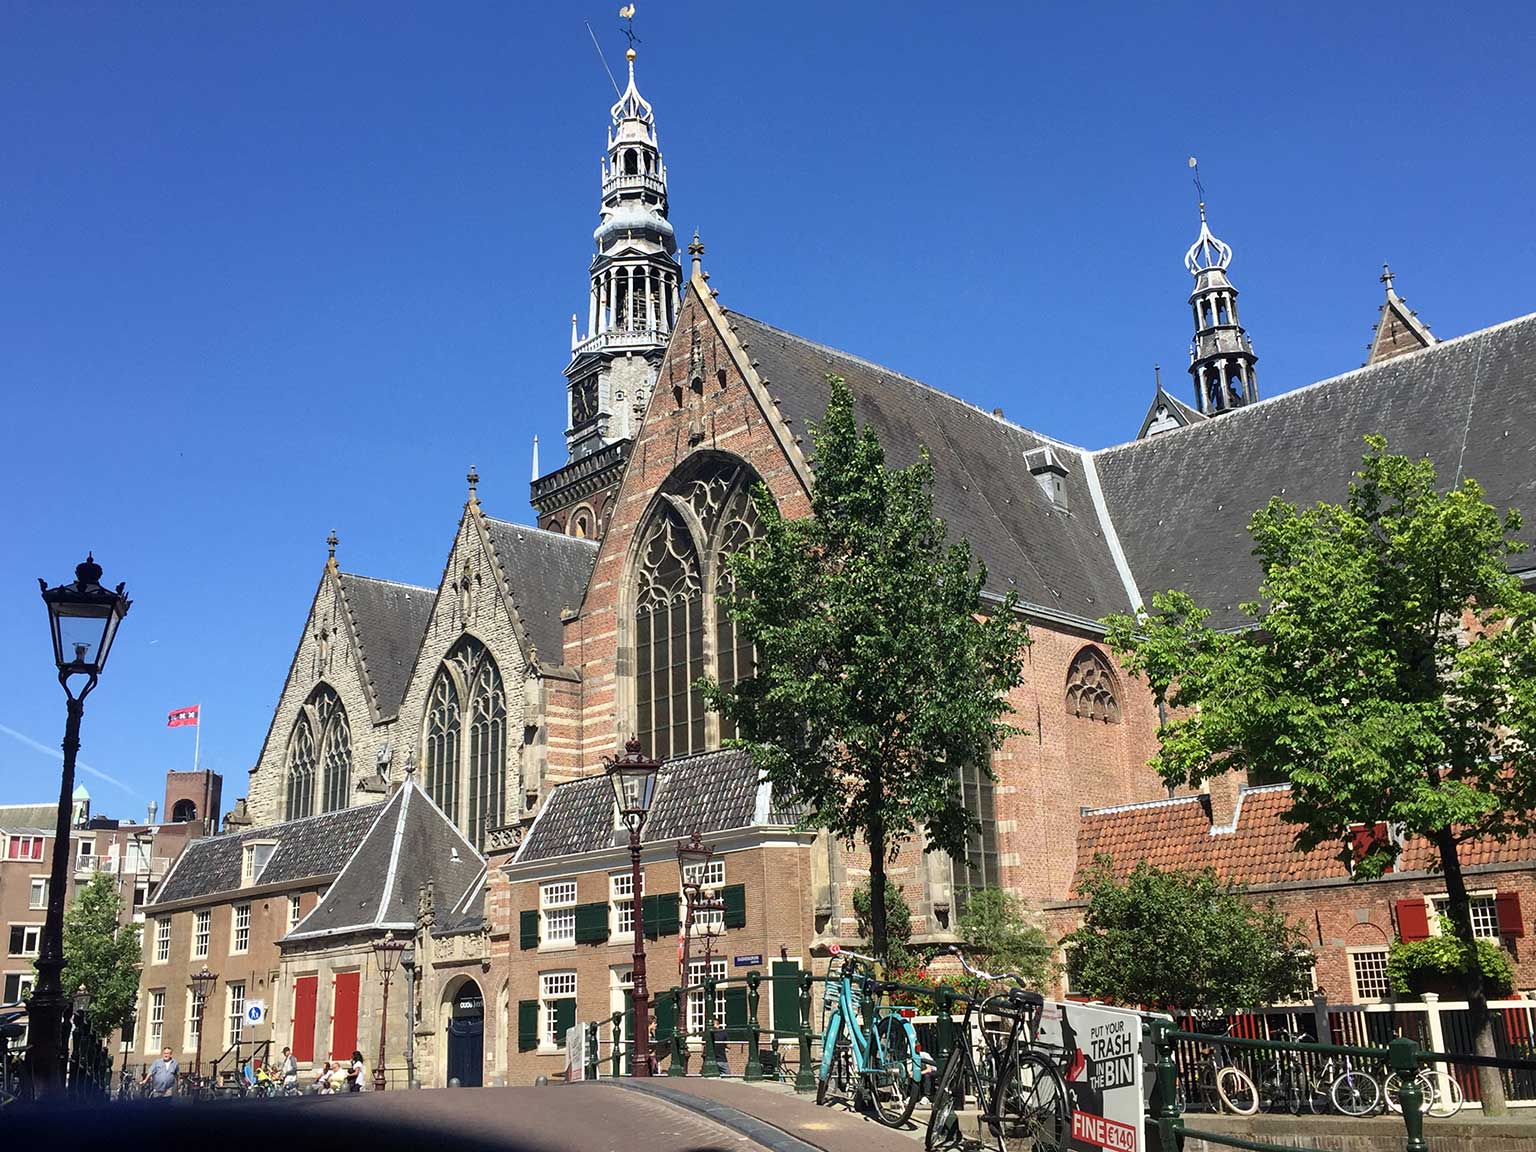 Oude Kerk, Amsterdam, seen from the Oudezijds Voorburgwal